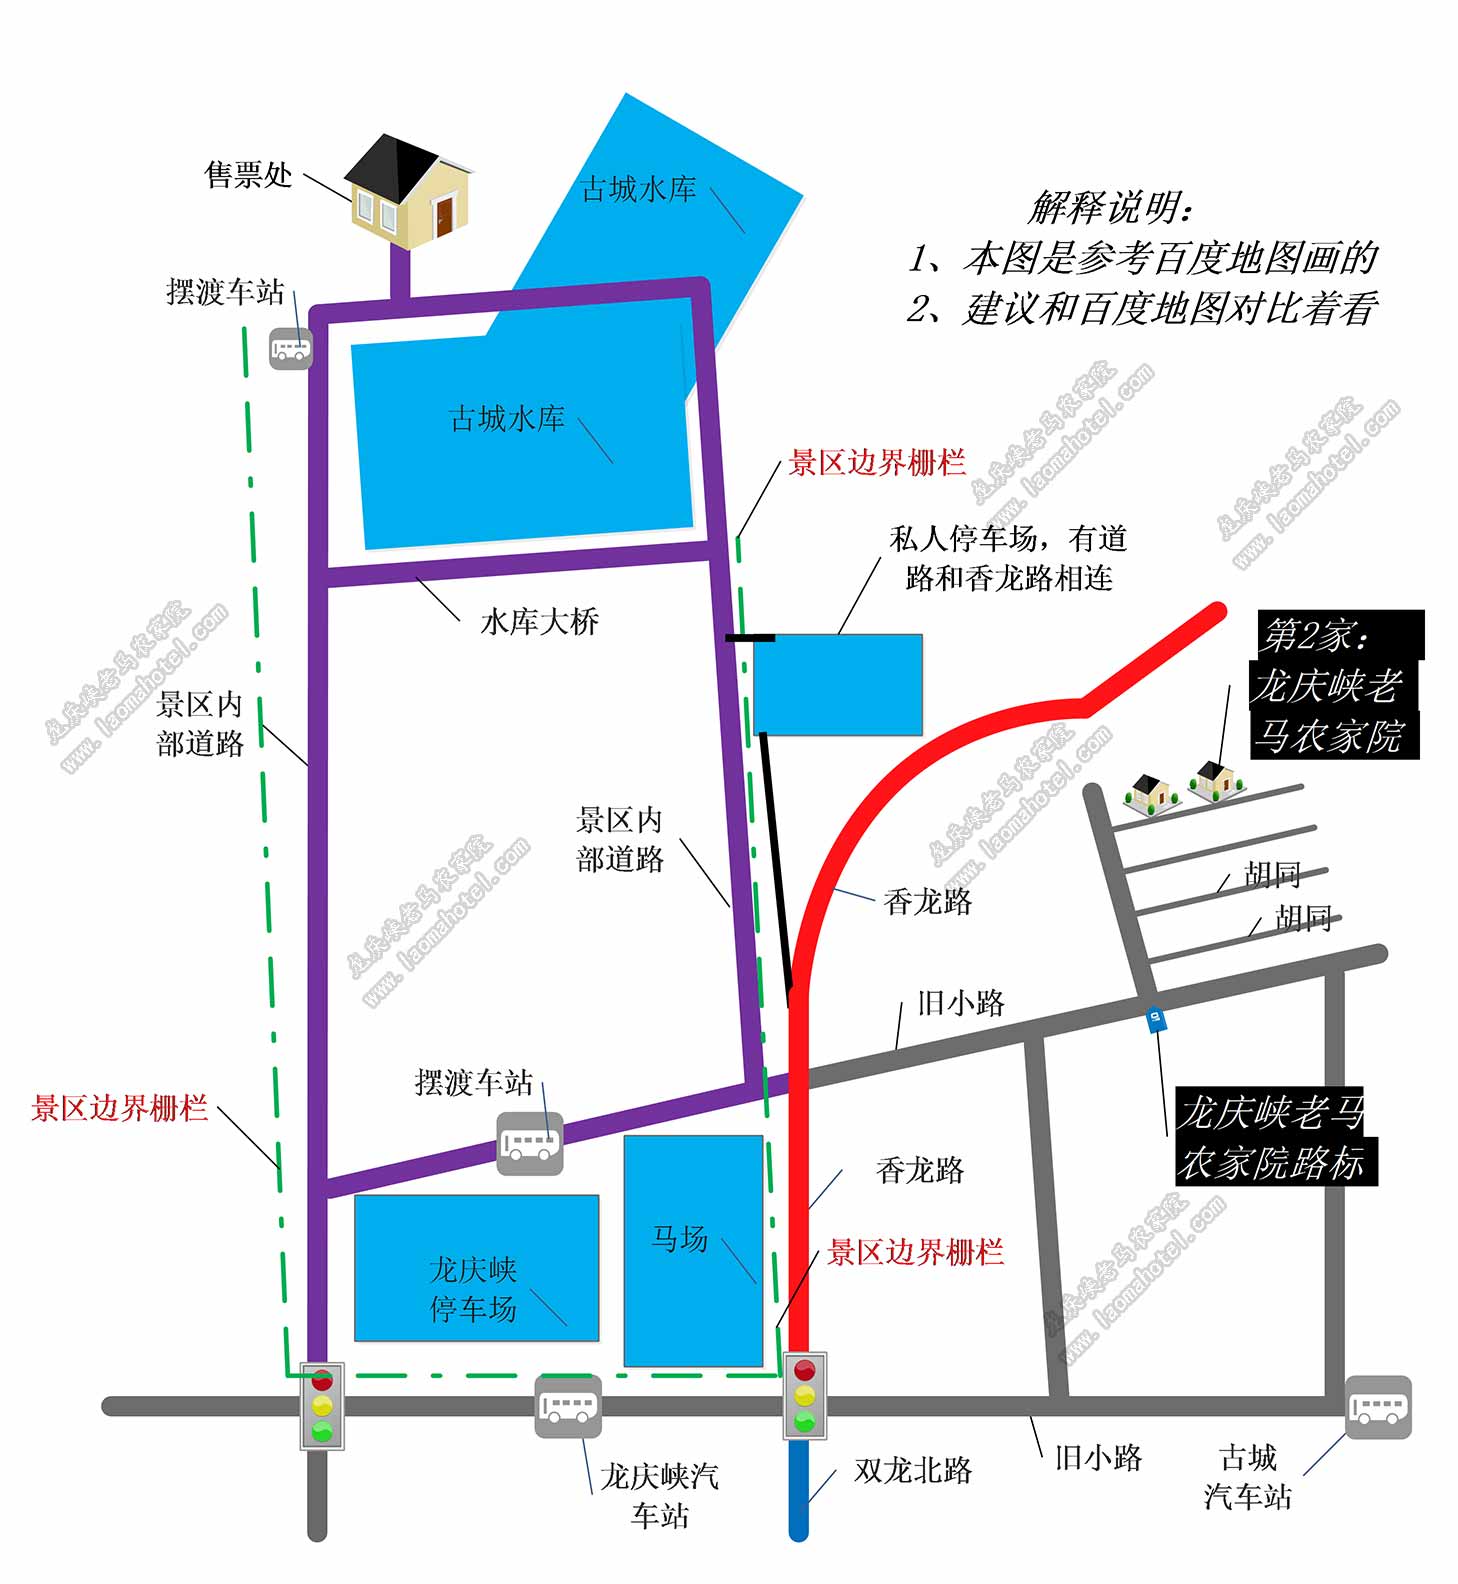 龙庆峡老马农家乐和龙庆峡景区位置示意图